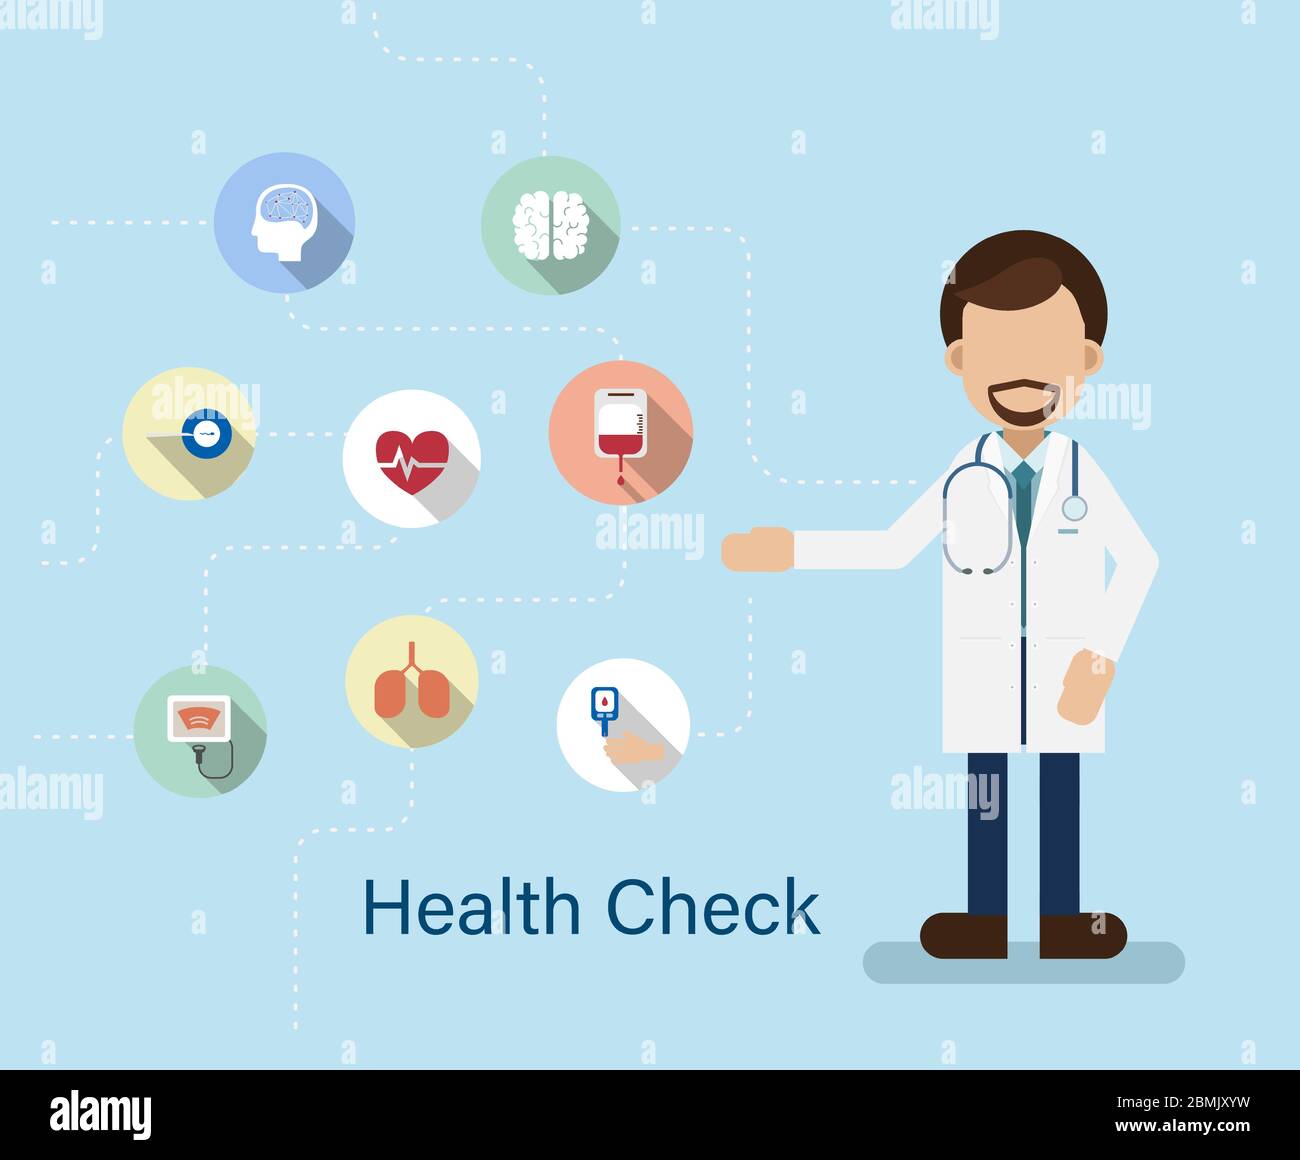 Health check concept Stock Vector